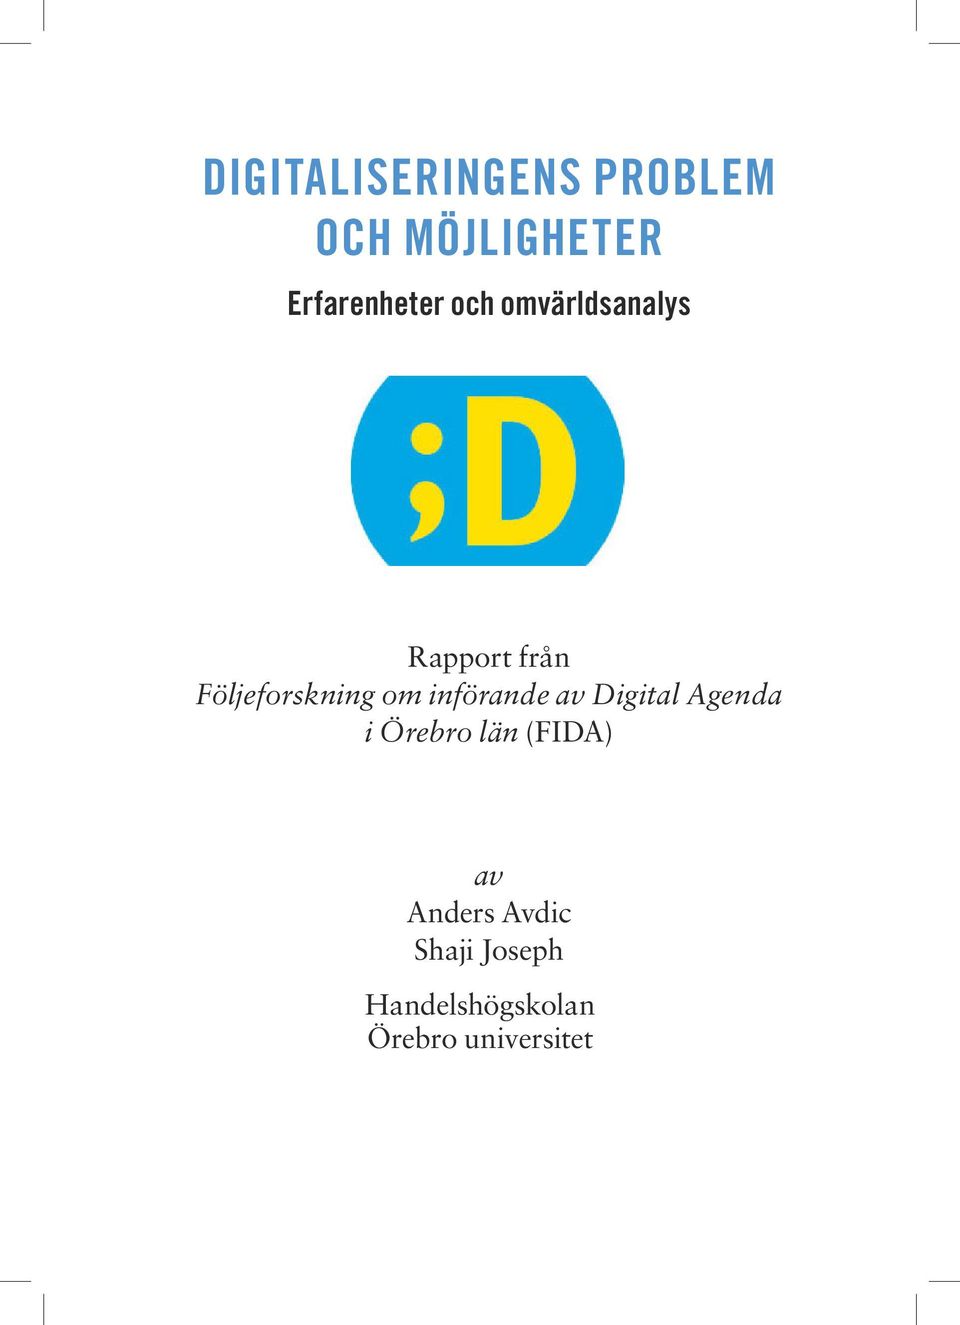 införande av Digital Agenda i Örebro län (FIDA) av